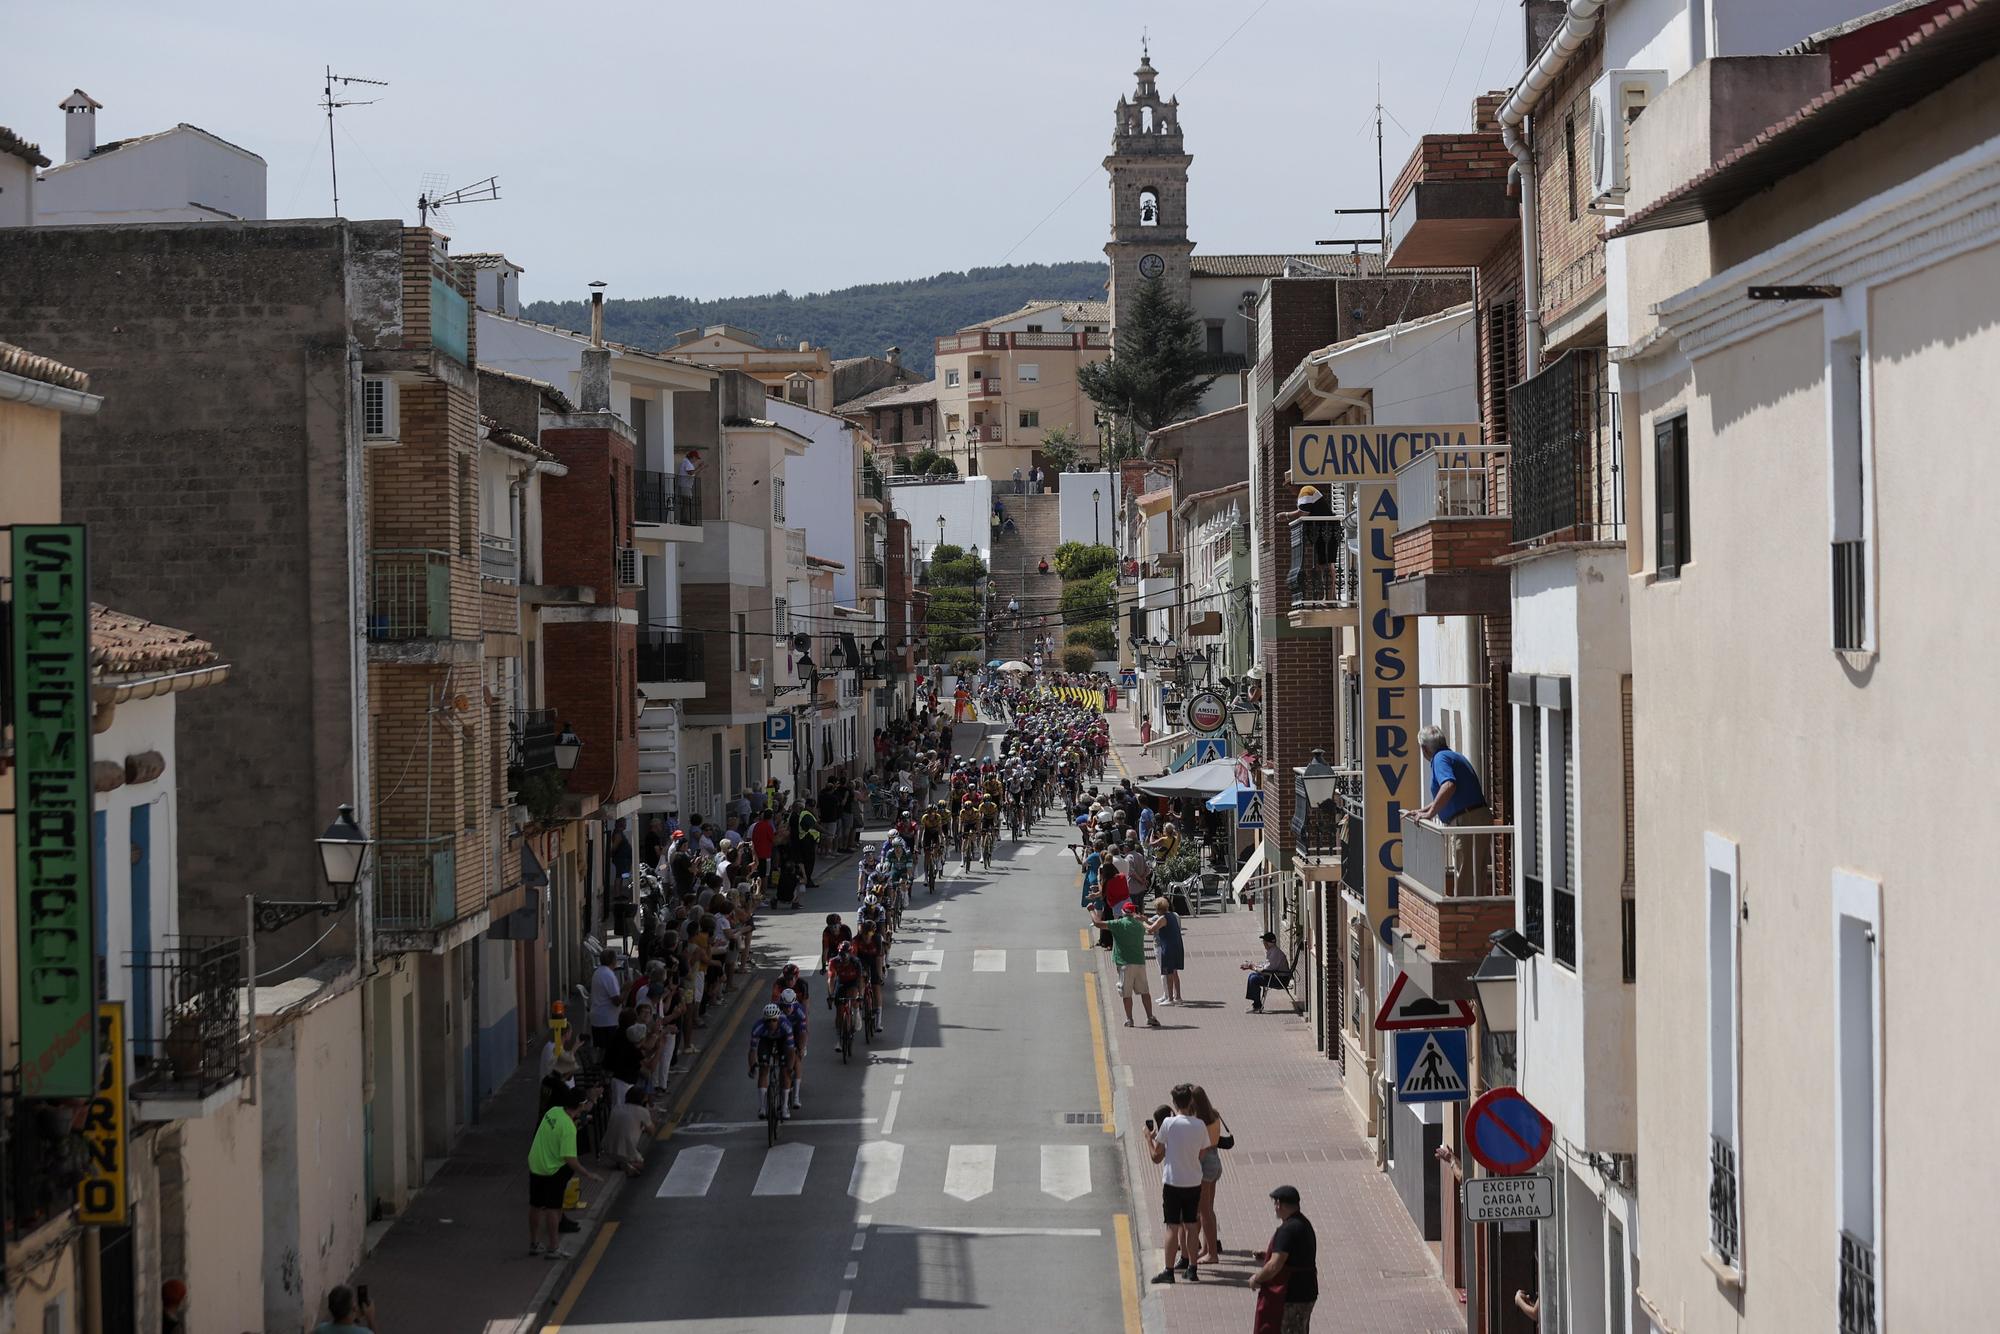 Las mejores imágenes de la etapa de La Vuelta por la provincia de Valencia